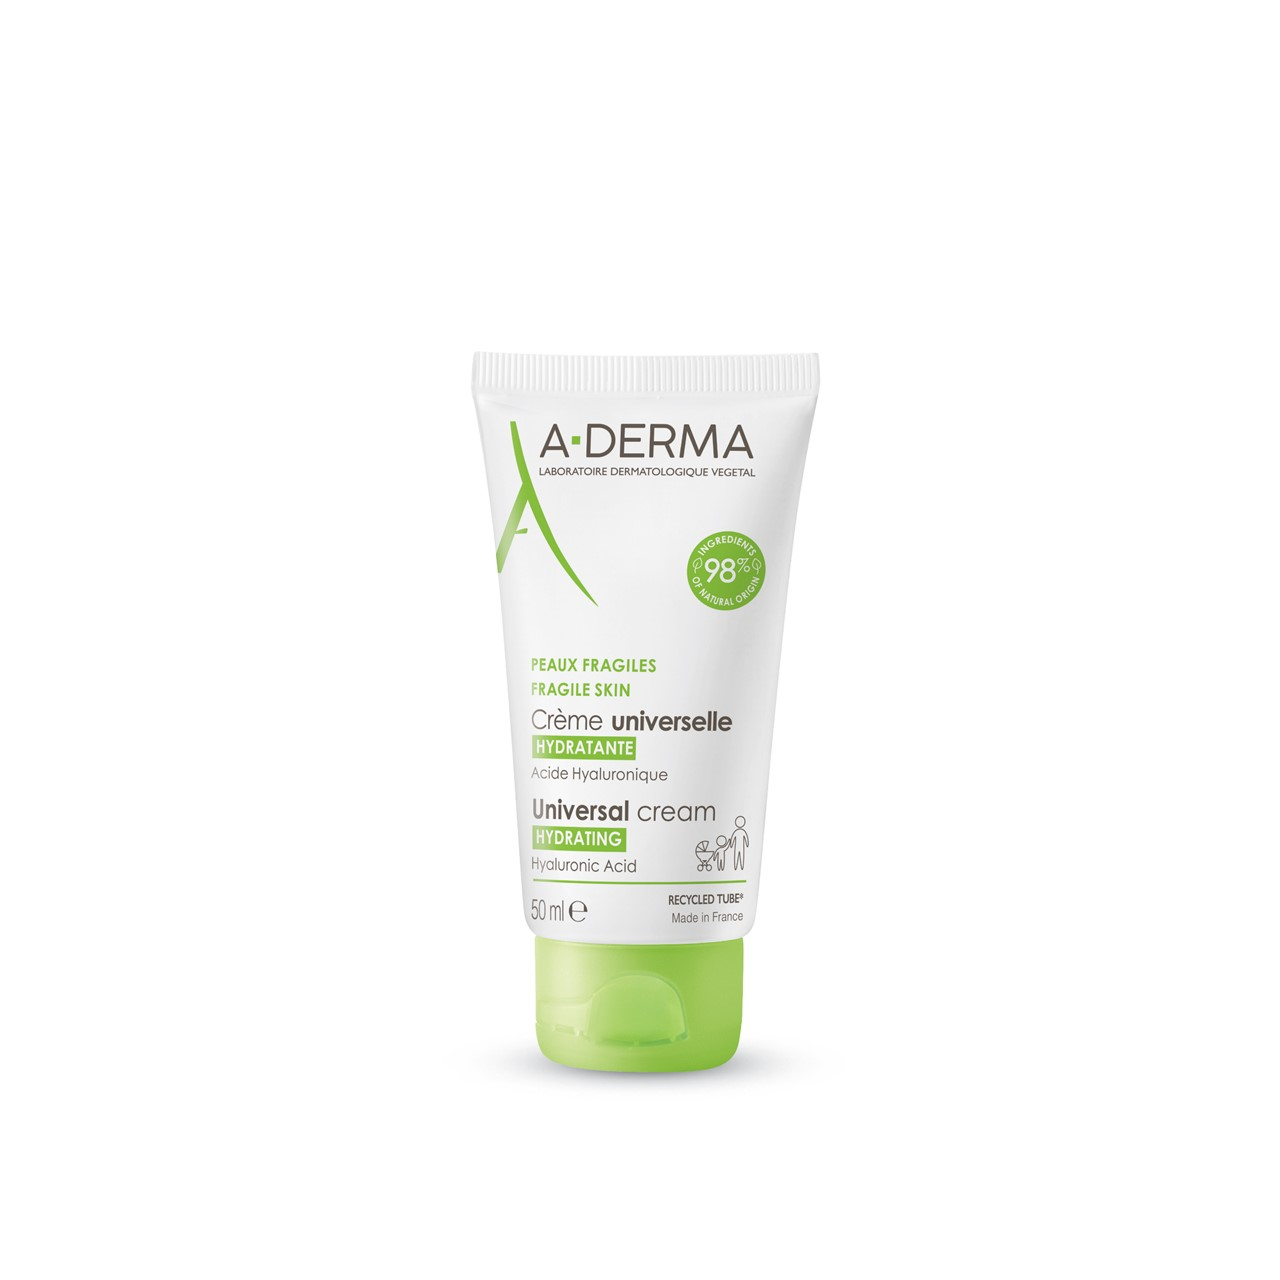 A-Derma Hydrating Universal Cream 50ml (1.69fl oz)